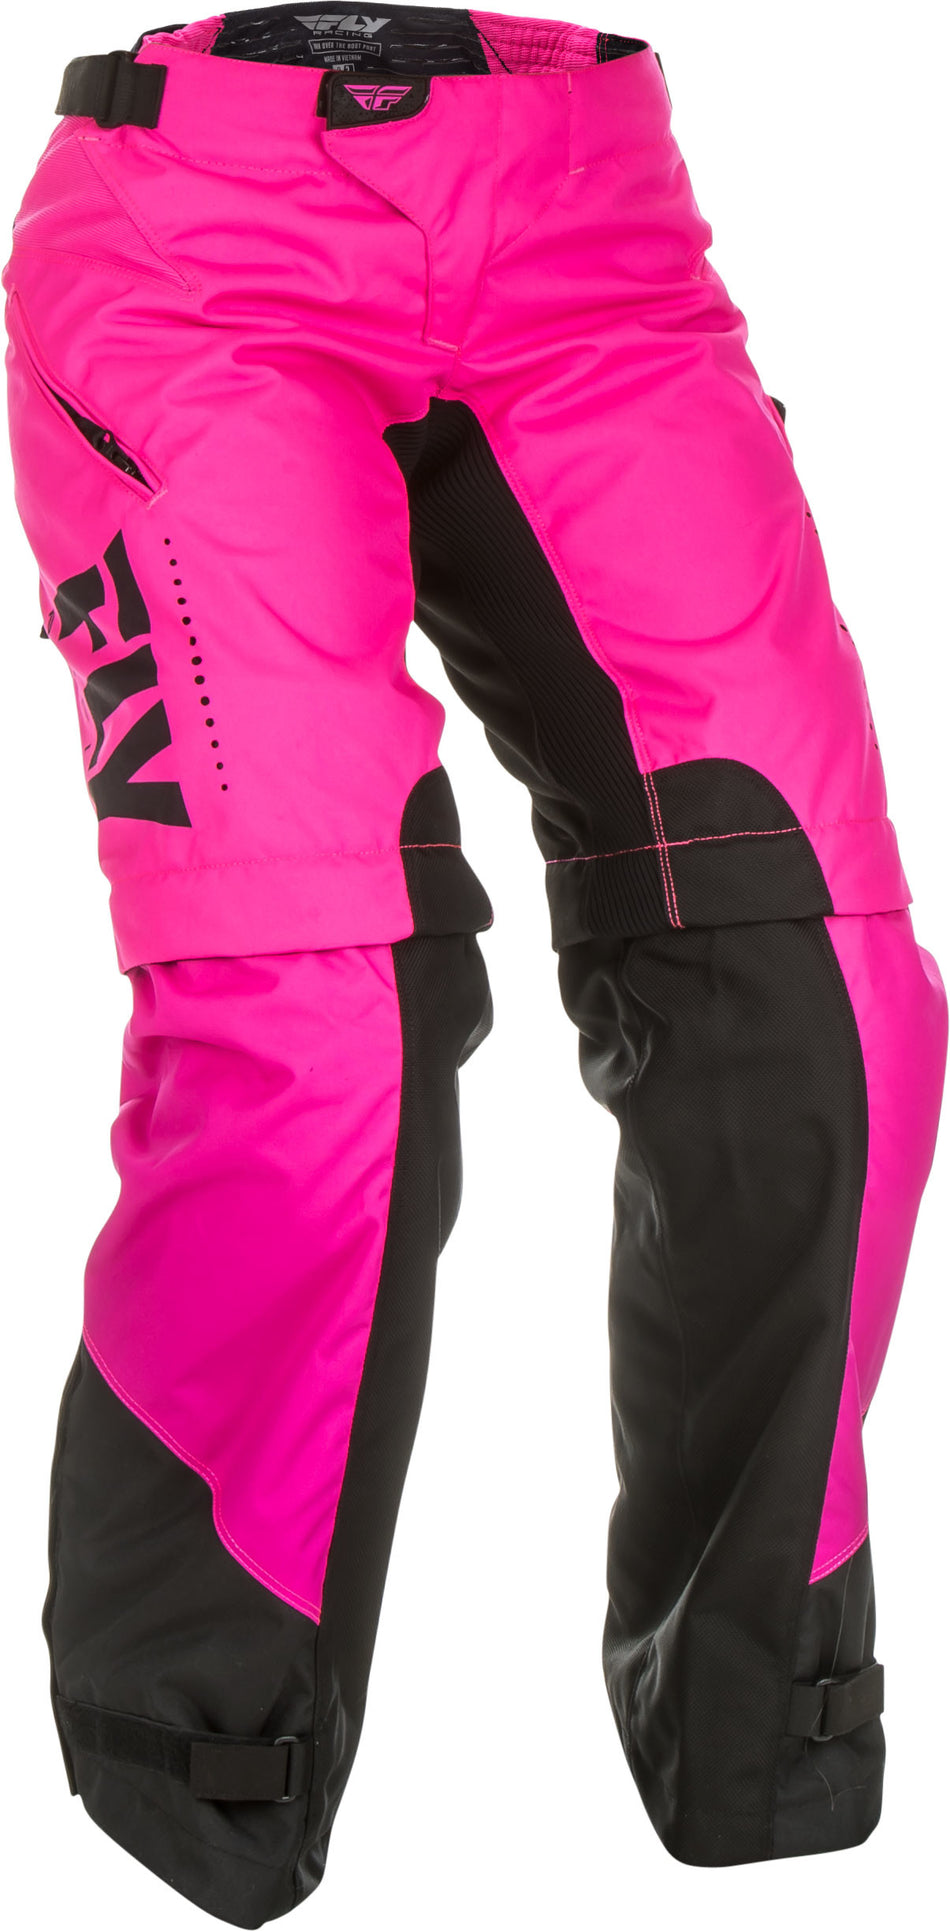 FLY RACING Women's Over Boot Pants Neon Pink/Black Sz 13/14 372-65810